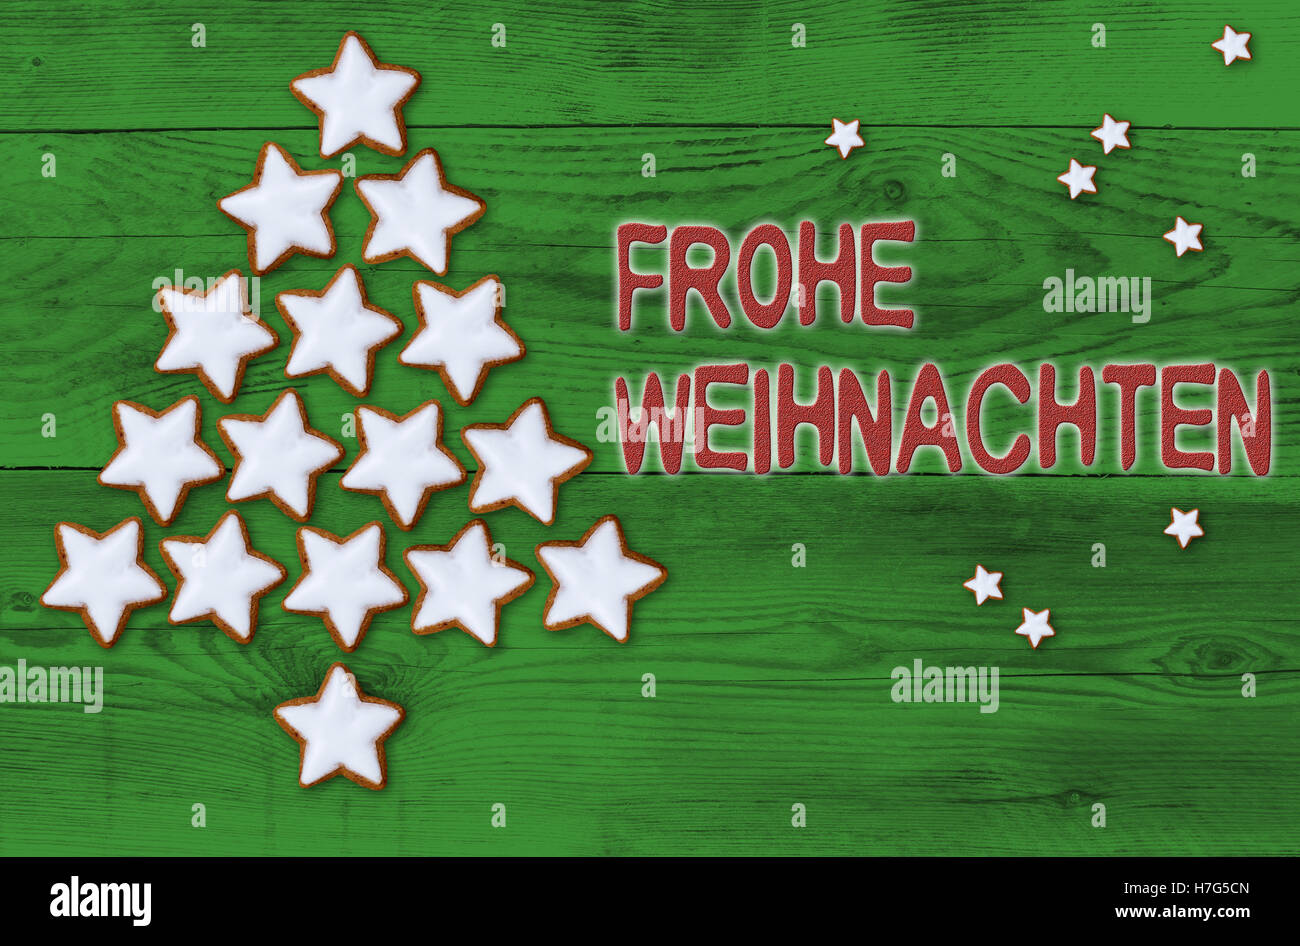 Arbre de Noël étoiles cannelle Frohe Weihnachten (en allemand Joyeux Noël) concept. Banque D'Images